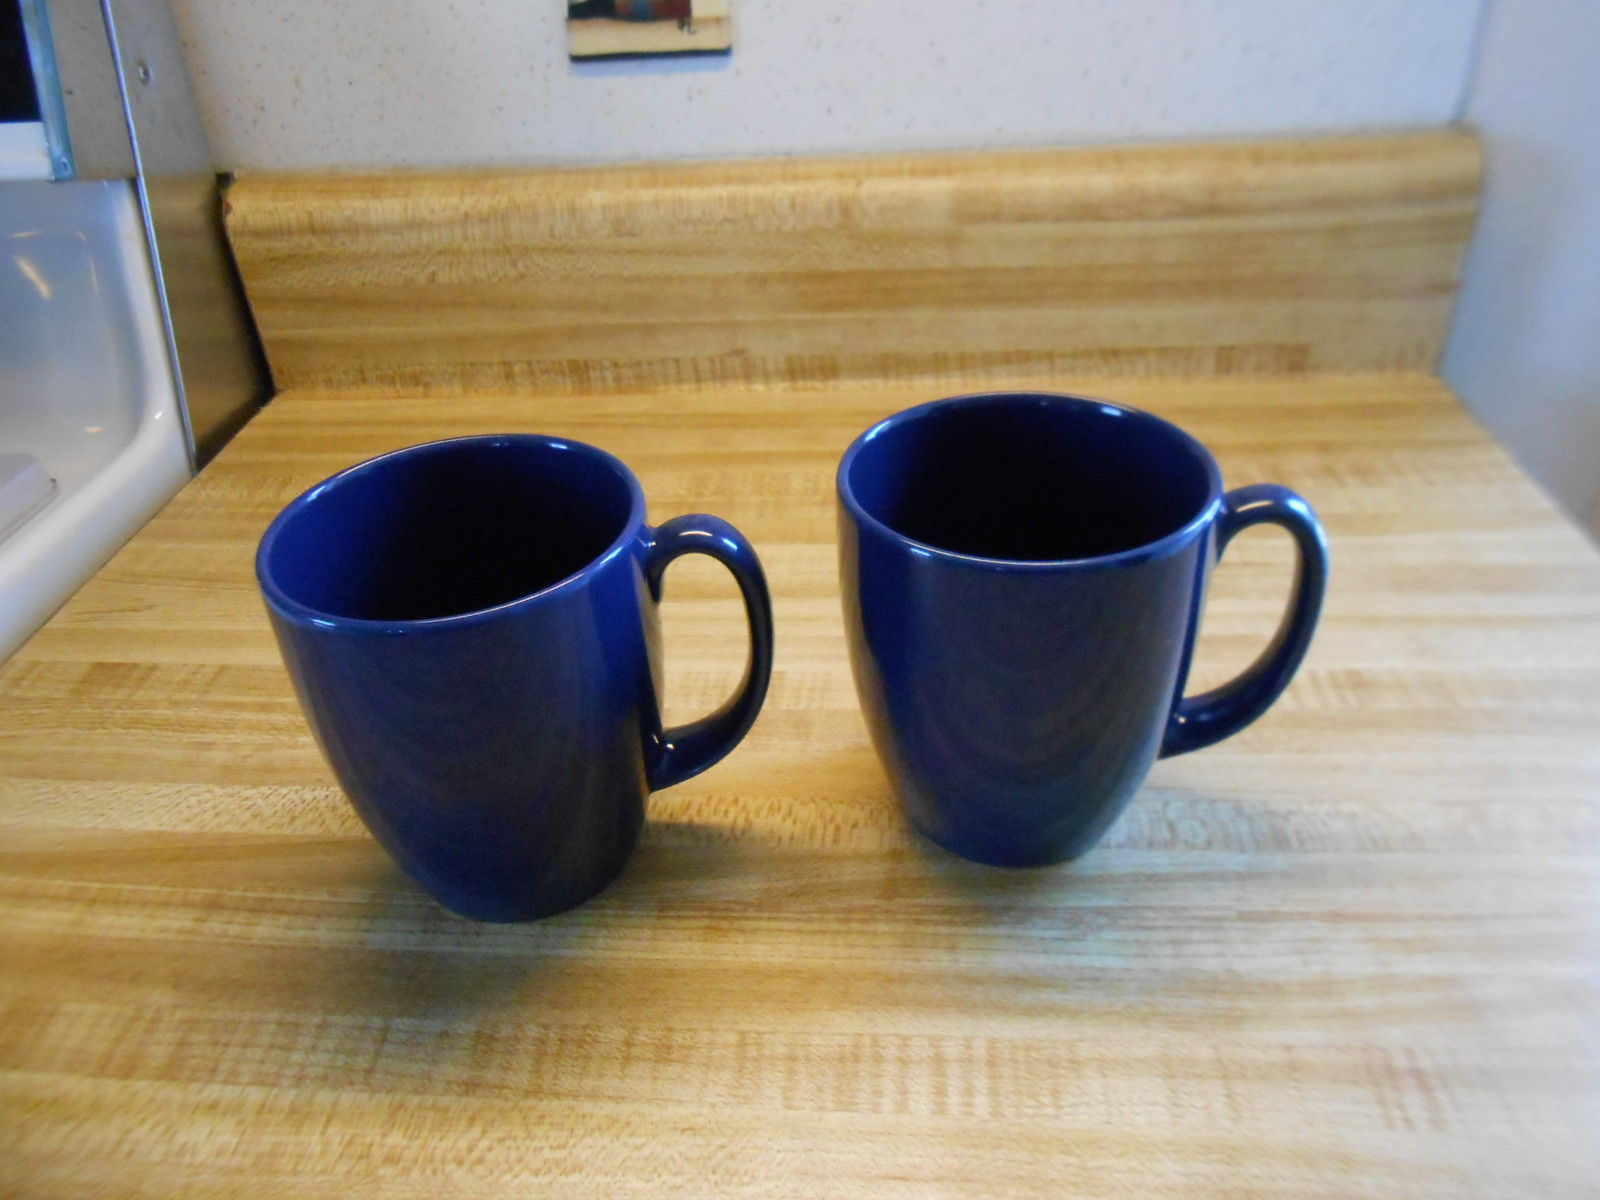 corelle stoneware mugs coffee mugs navy blue stoneware coffee mugs 2 ct - $14.99